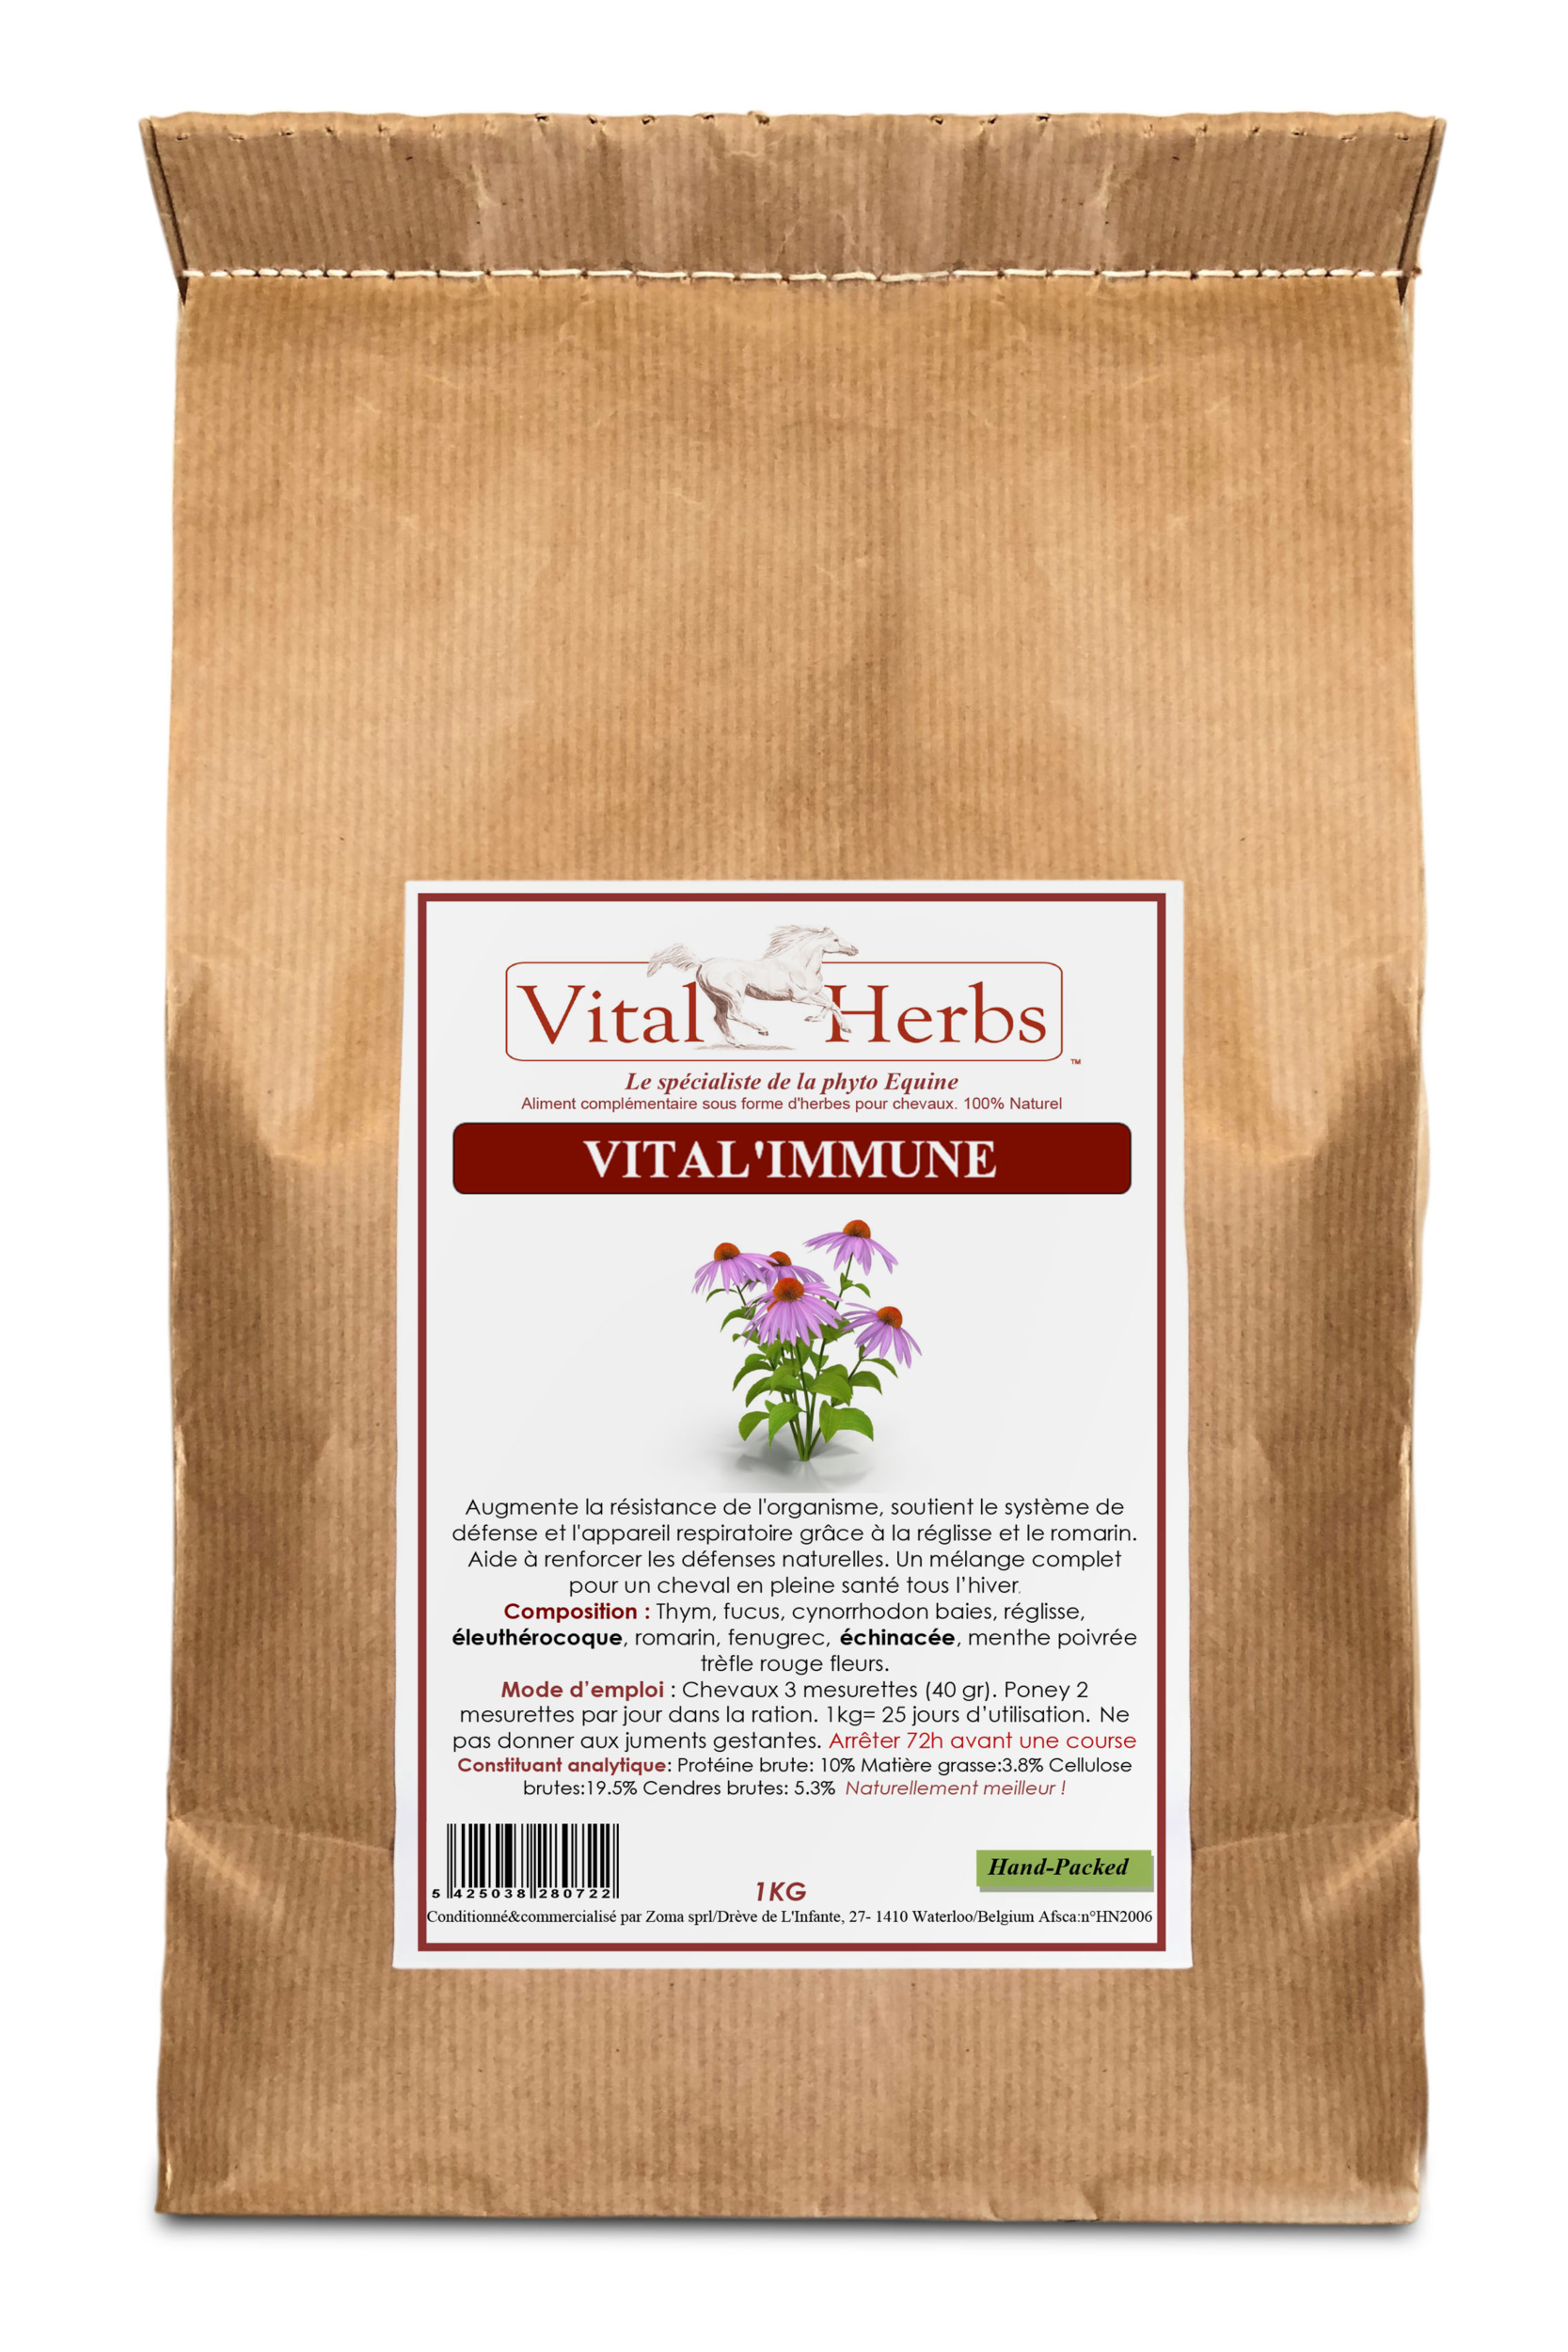 sac-1-kg-vital-immune-vital-herbs-vitalherbs-immunité